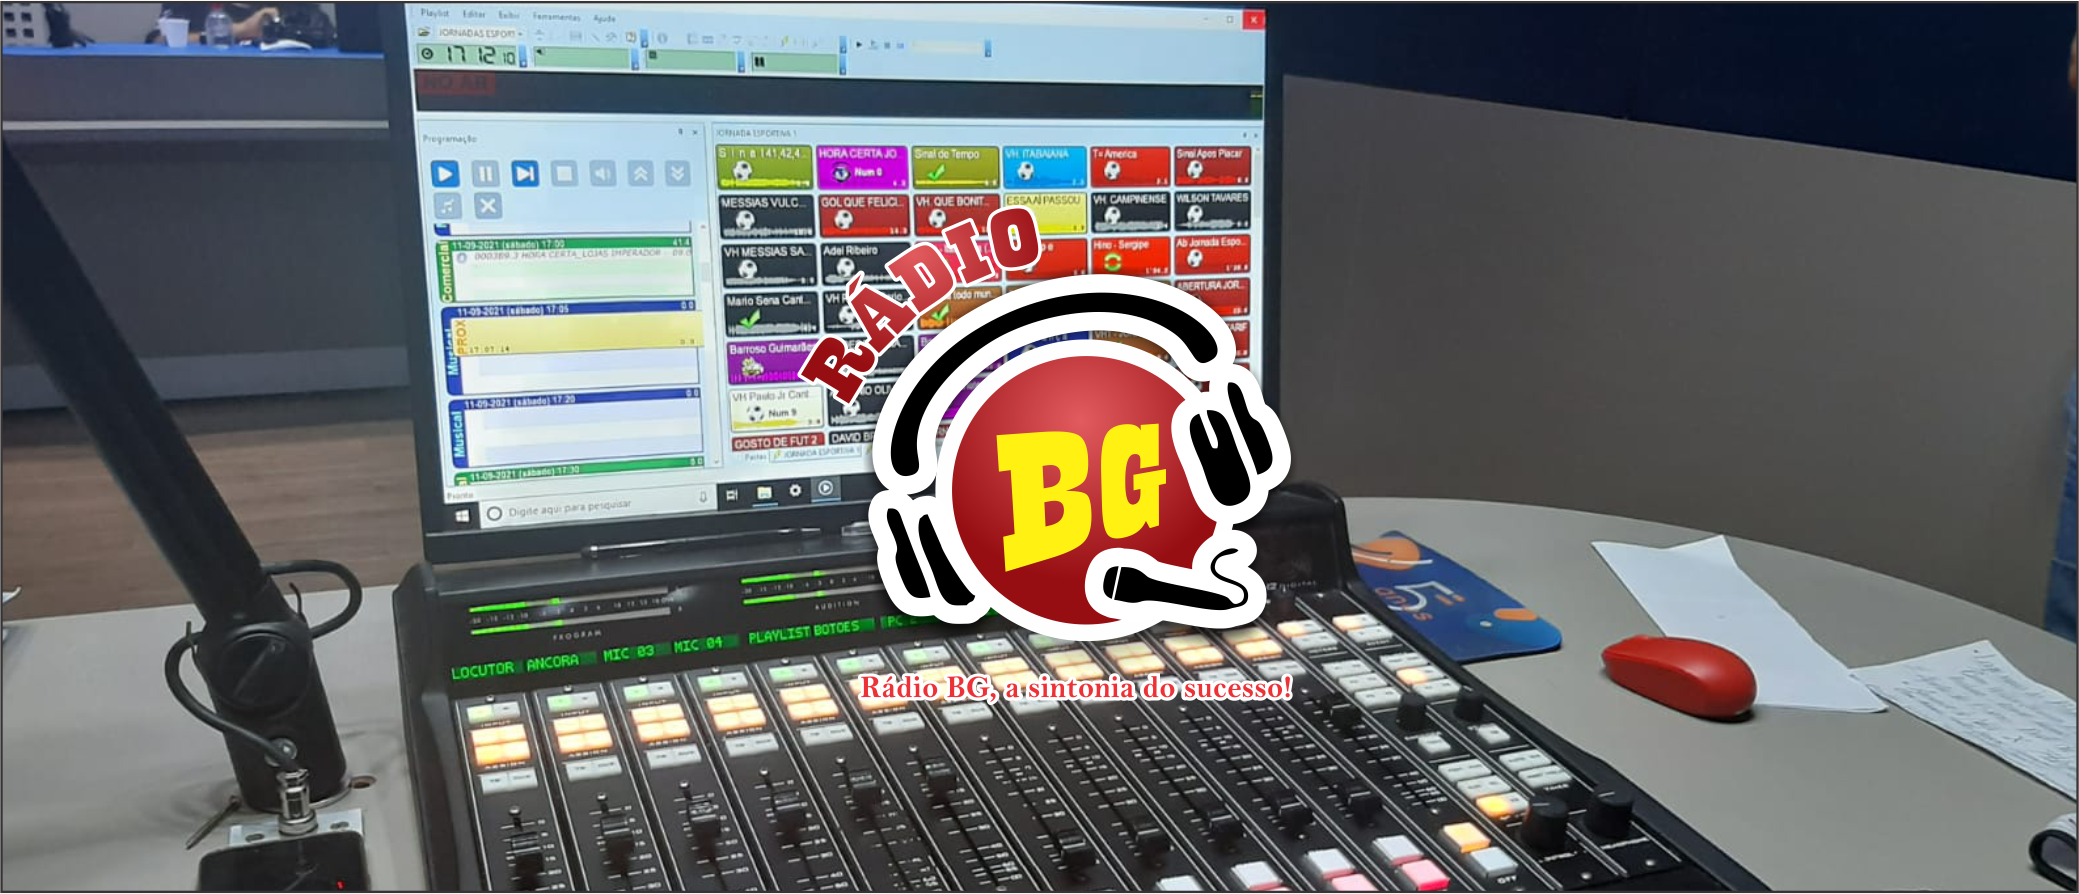 Rádio BG sintonia do sucesso - 24 horas no ar